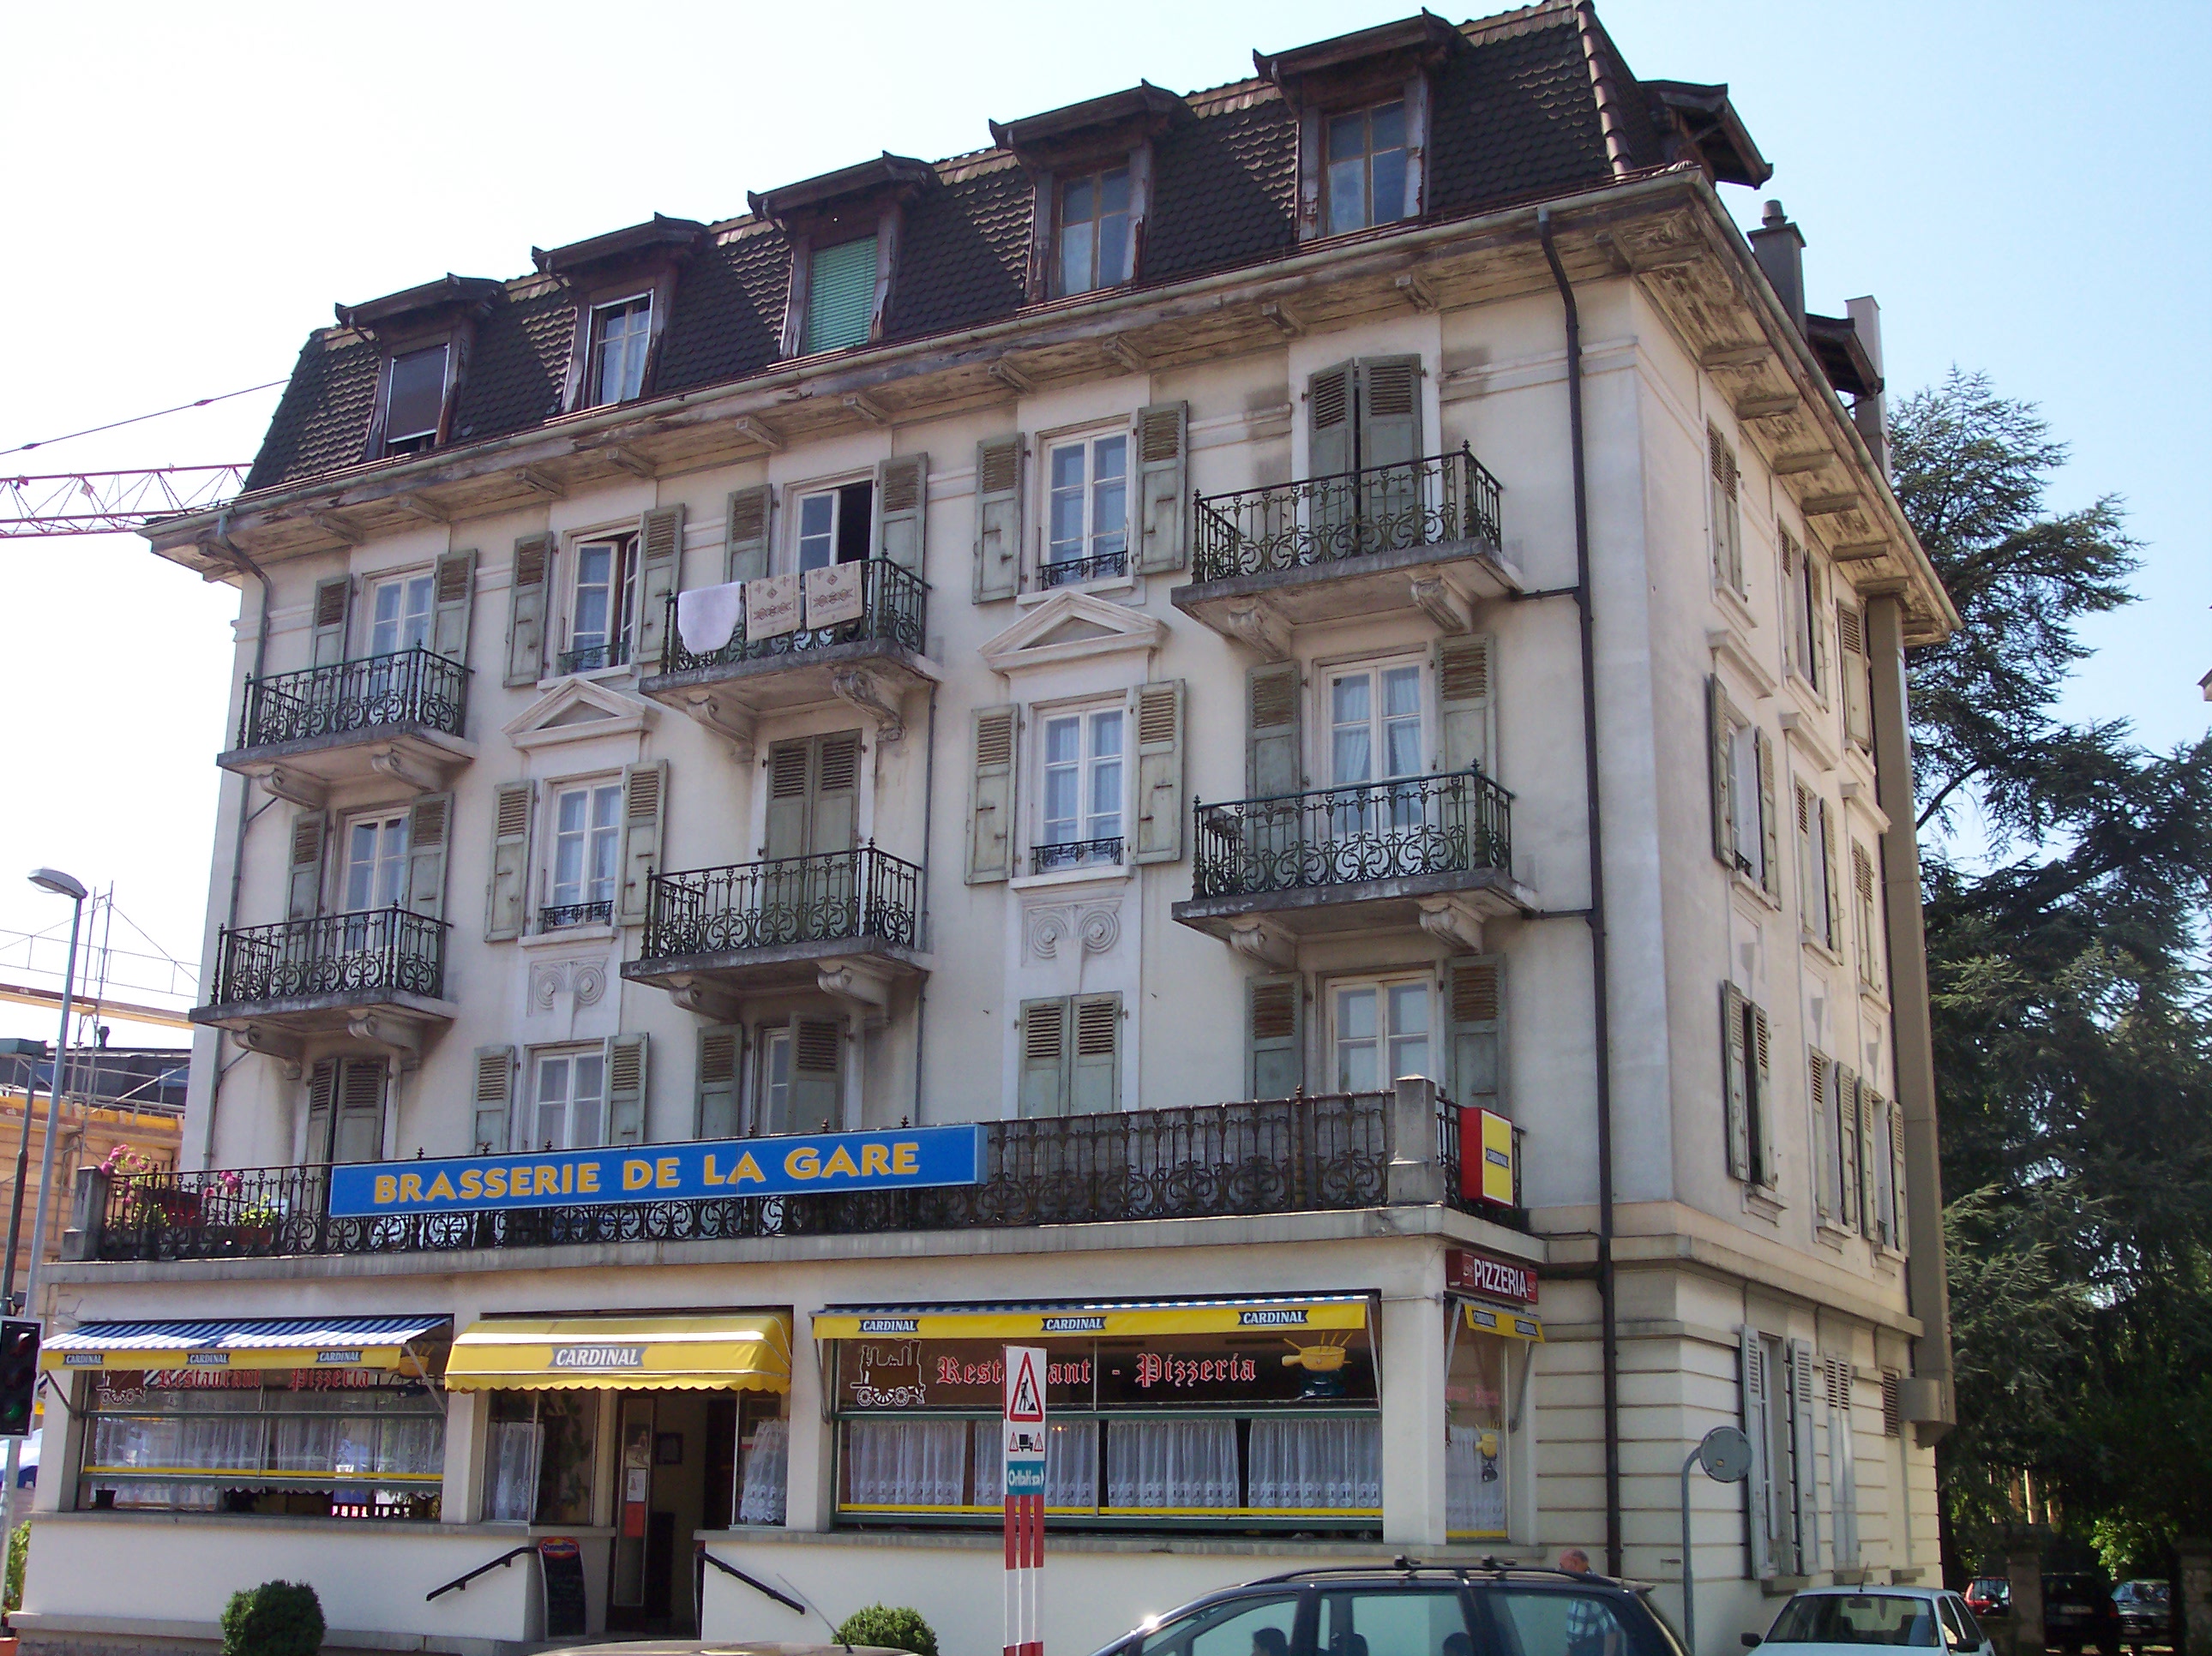 dario brasserie de la gare architecture facade royalty-free